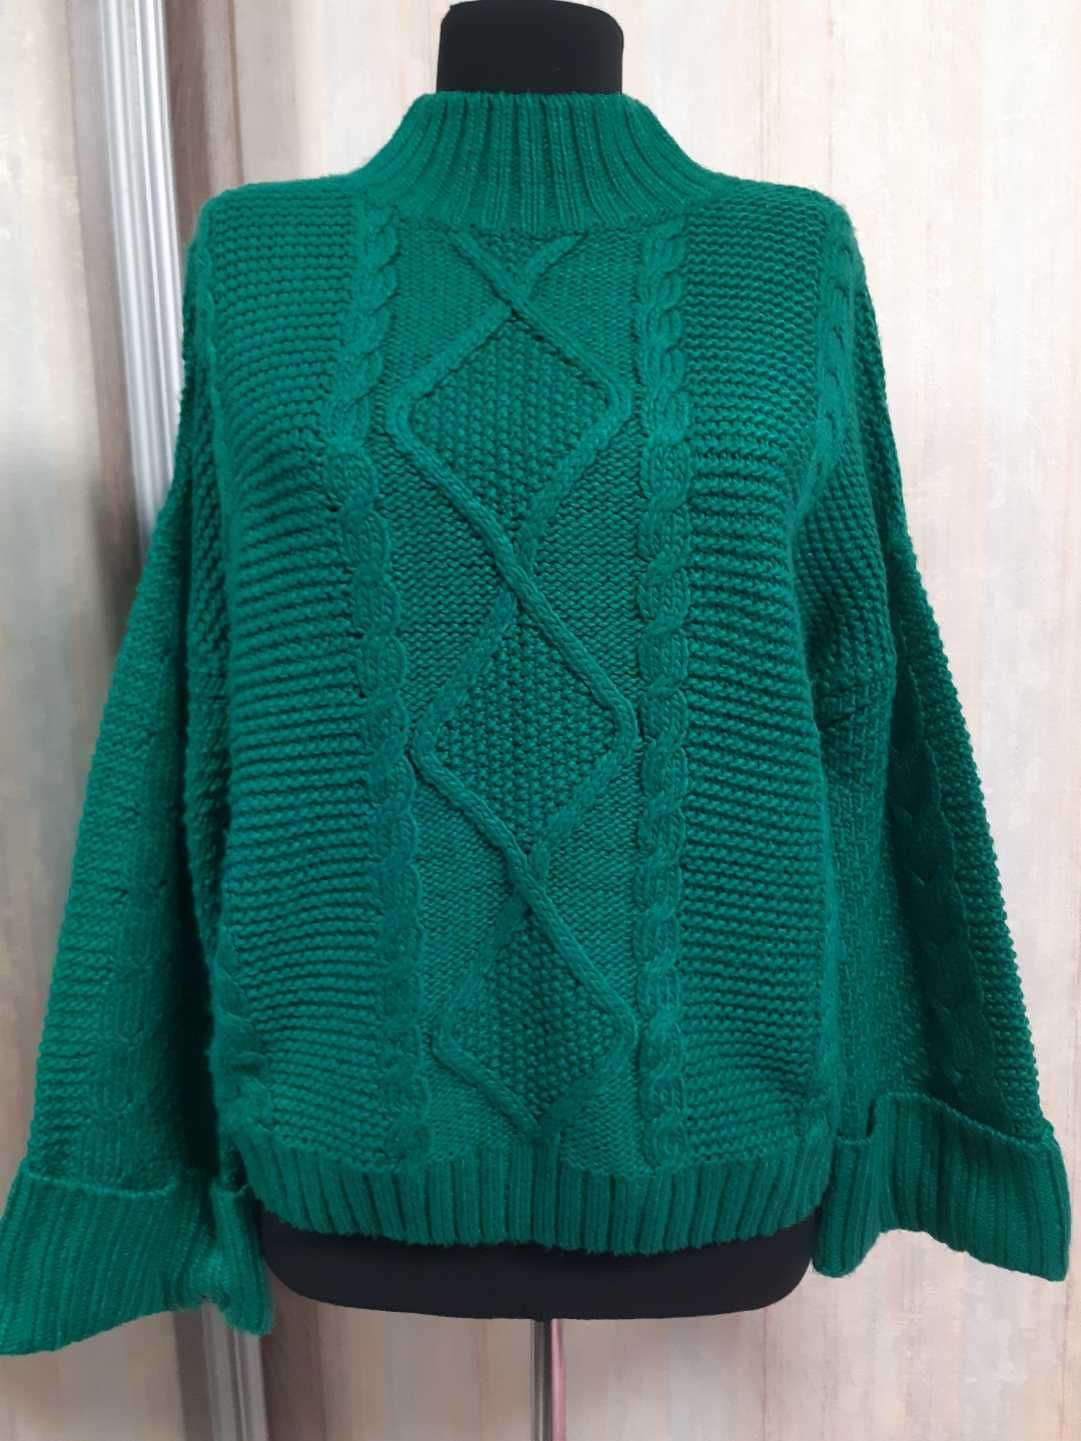 Кардиган,платье,туника,капюшоном Турция 54,56,58размер,свитер зелёный